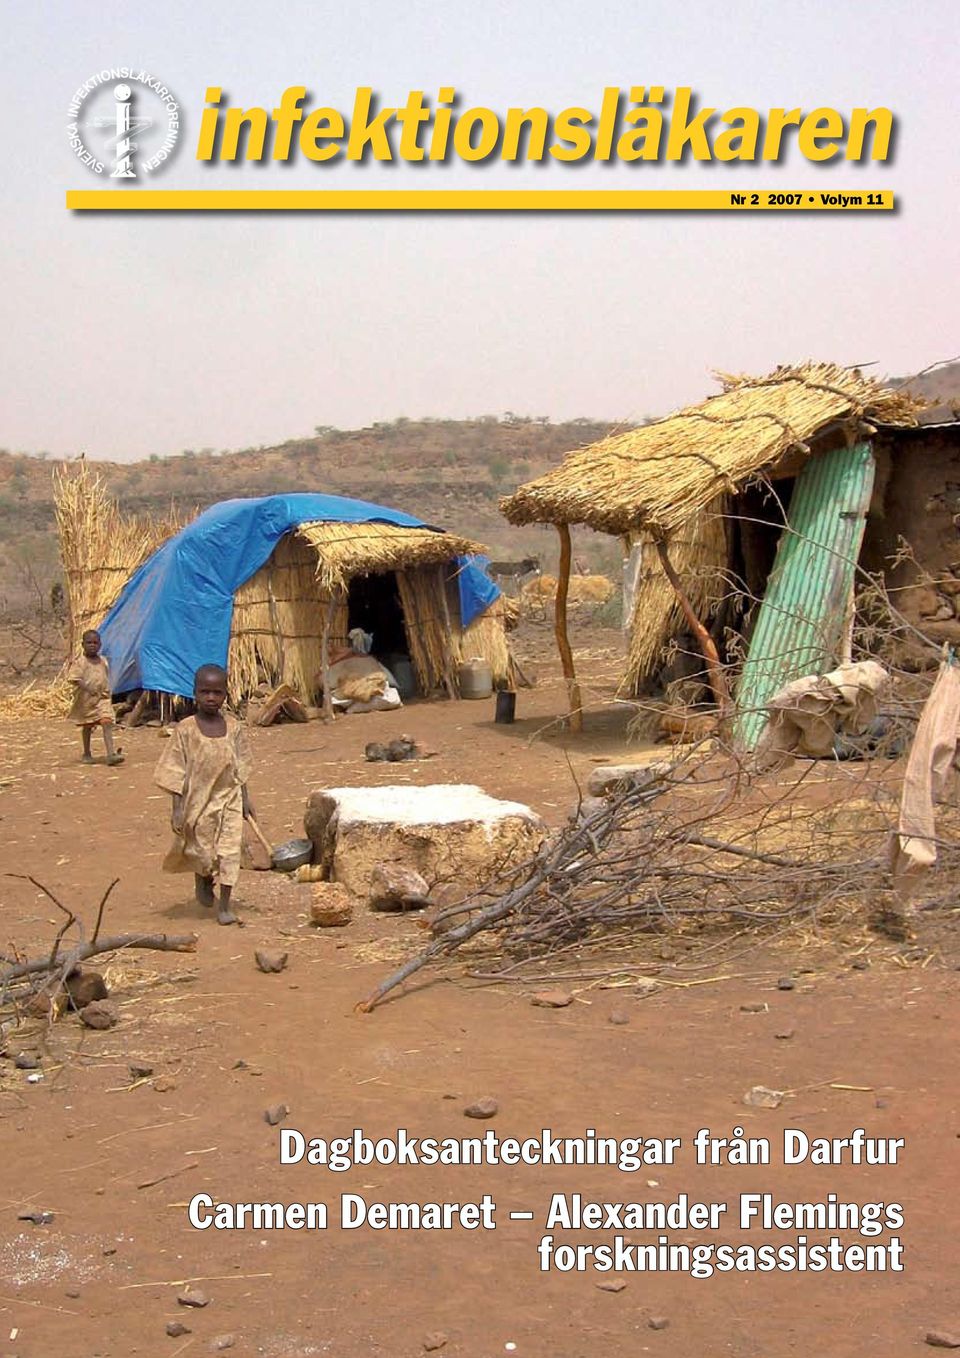 Darfur Carmen Demaret